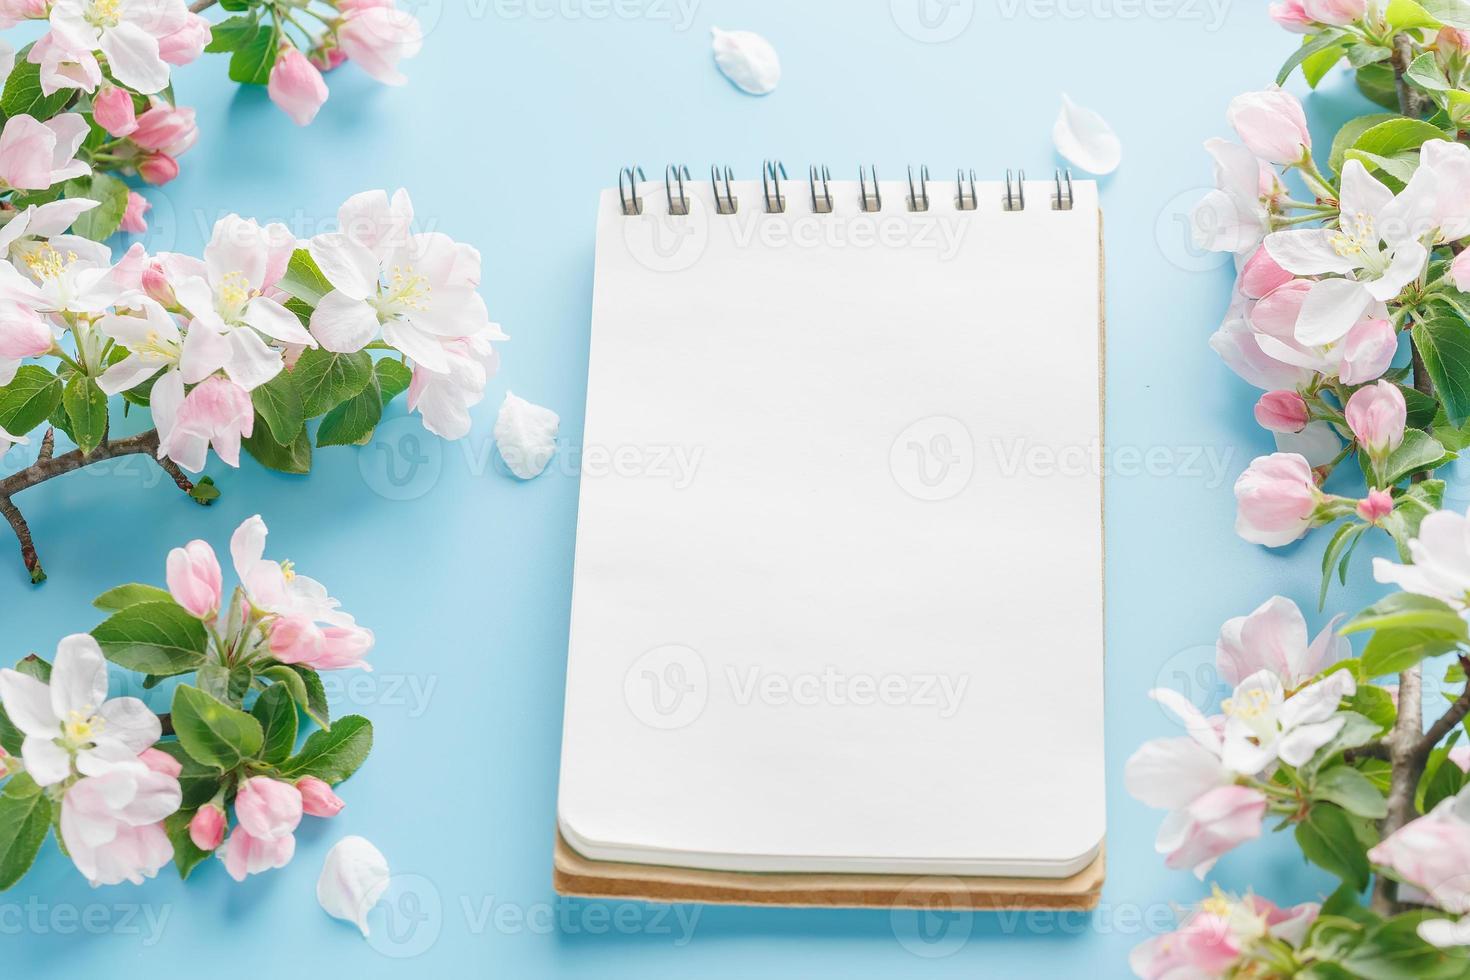 sakura de primavera florescendo em um fundo azul com espaço de bloco de notas para uma mensagem de saudação. o conceito de primavera e dia das mães. lindas flores delicadas de cerejeira rosa na primavera foto